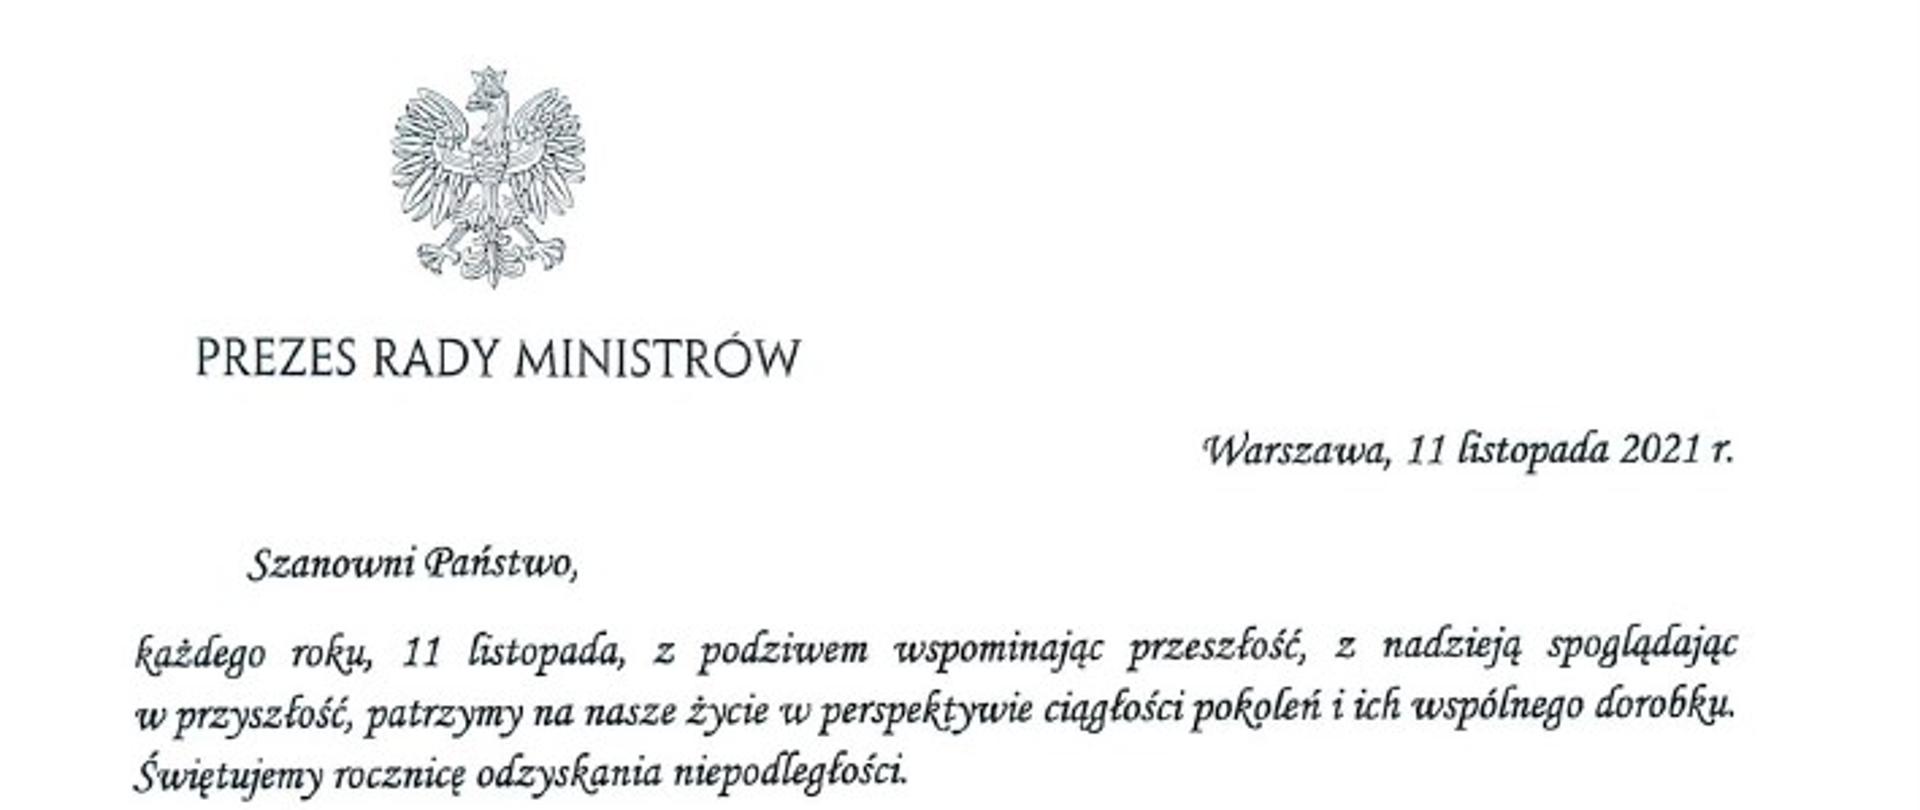 Zdjęcie przedstawia skan listu okolicznościowego Prezesa Rady Ministrów do członków korpusu służby cywilnej